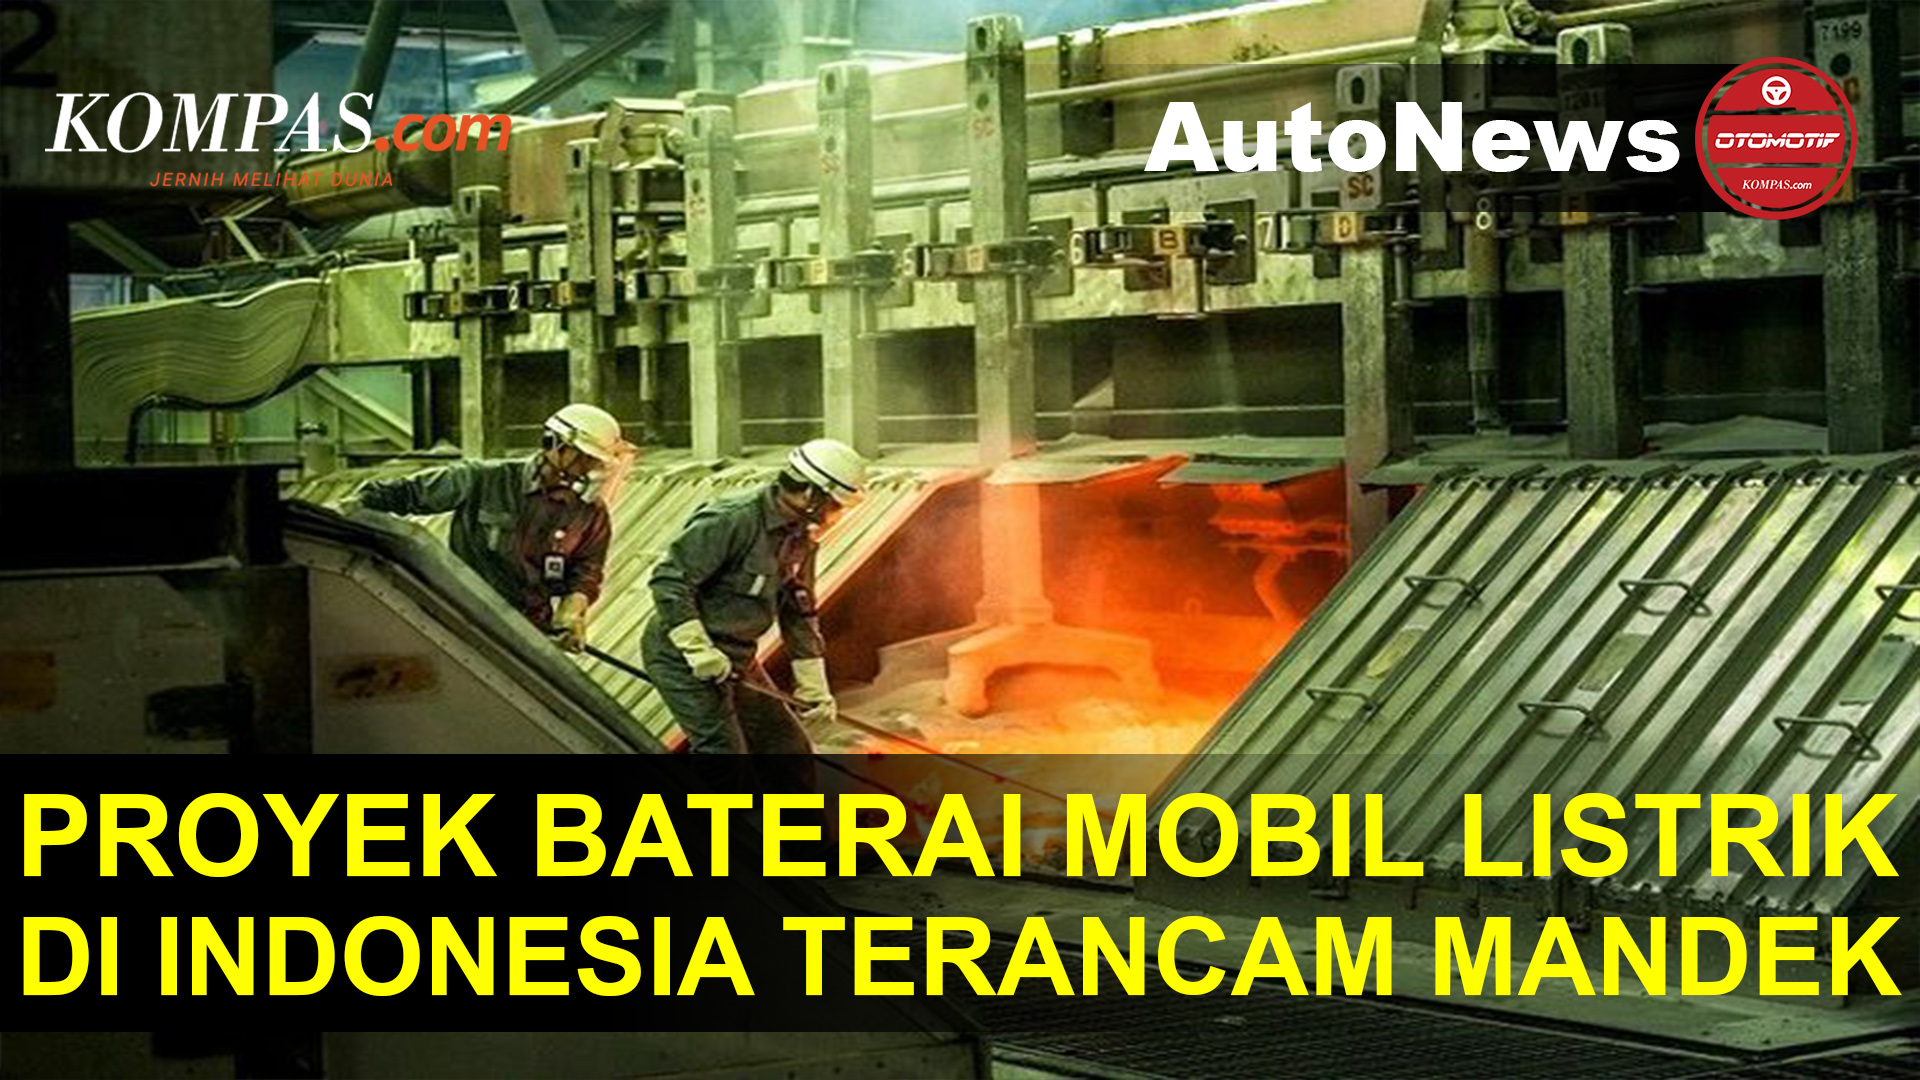 Proyek Baterai Mobil Listrik LG di Indonesia Terancam Mandek